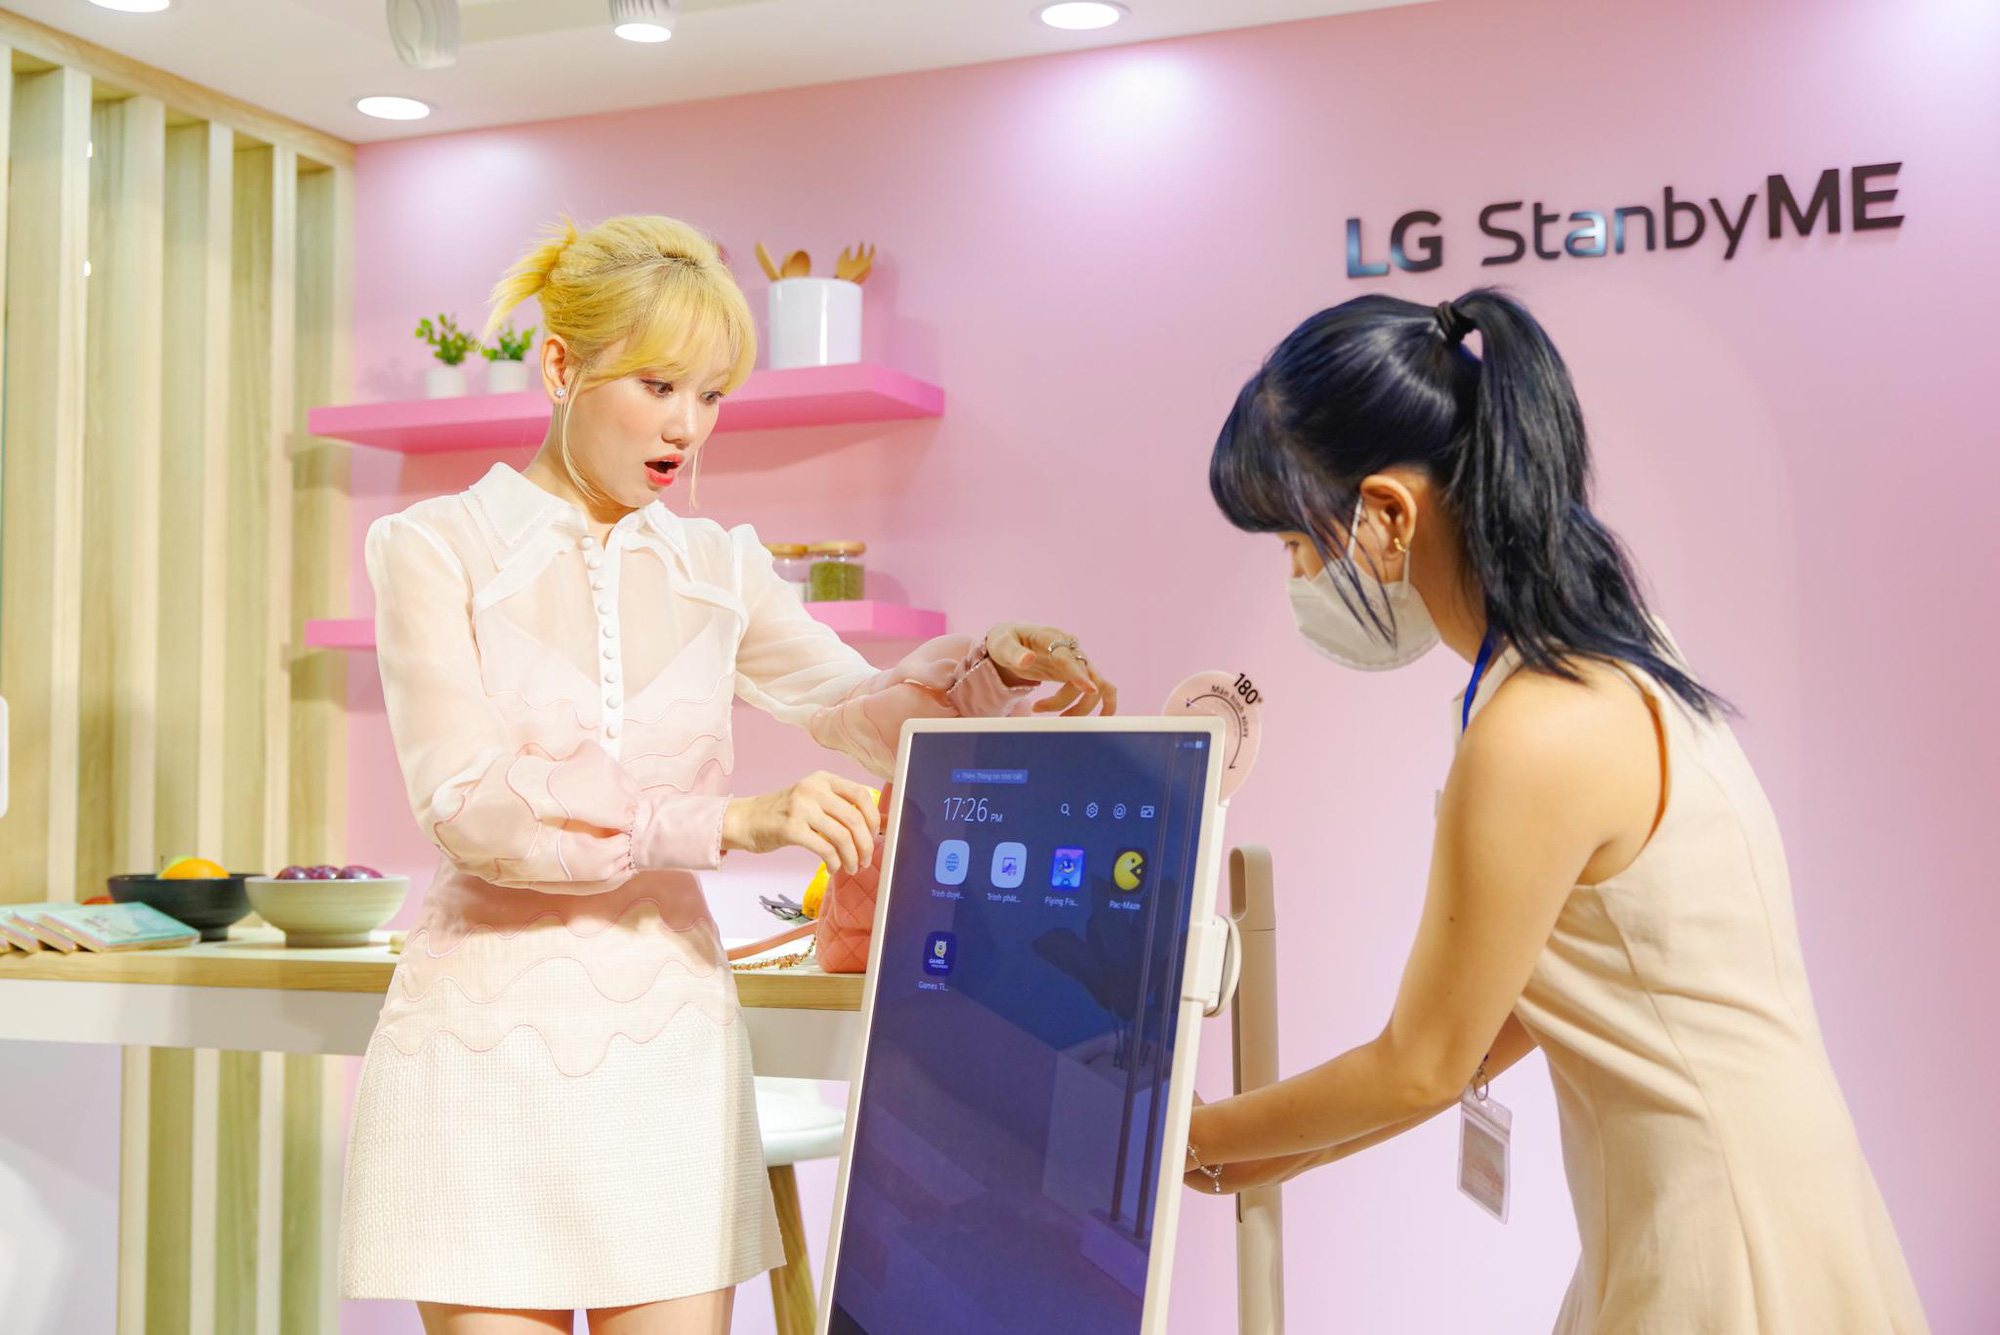 Hari Won tròn mắt bất ngờ khi lần đầu trải nghiệm LG StanbyME, thiết bị giải trí không dây đình đám bậc nhất hiện nay - Ảnh 3.